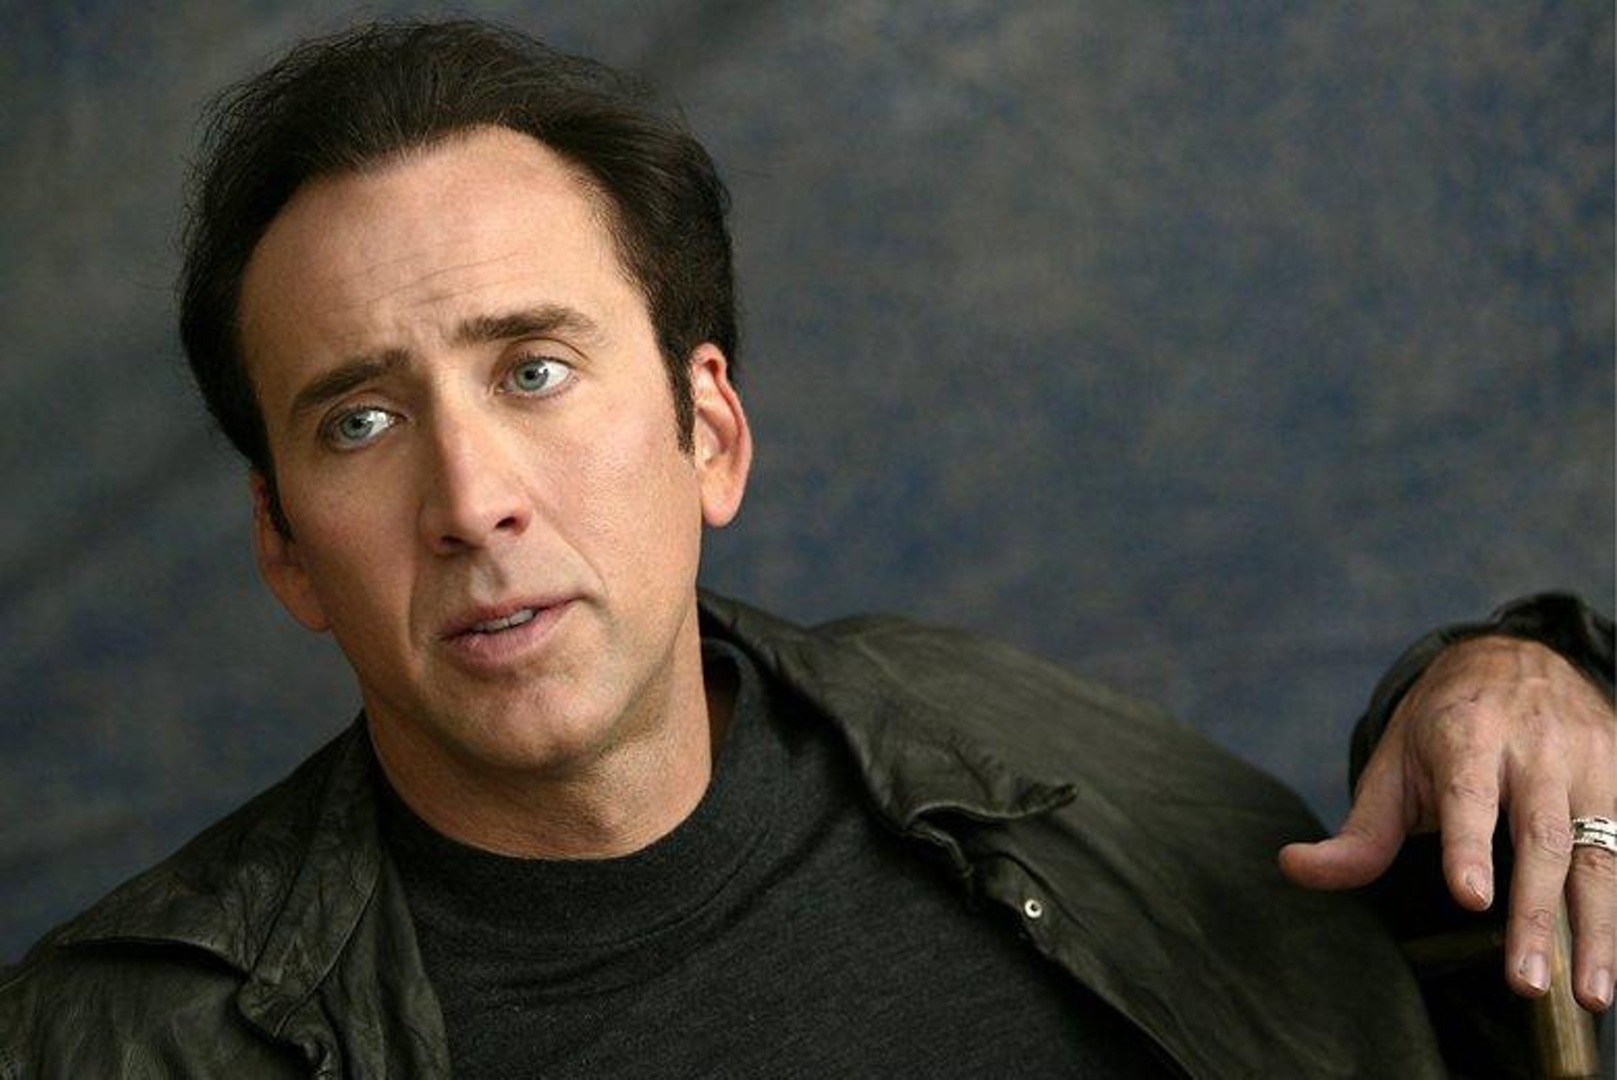 Nicolas Cage'in süper kahraman filmleri savunması: Bence eğlenceli